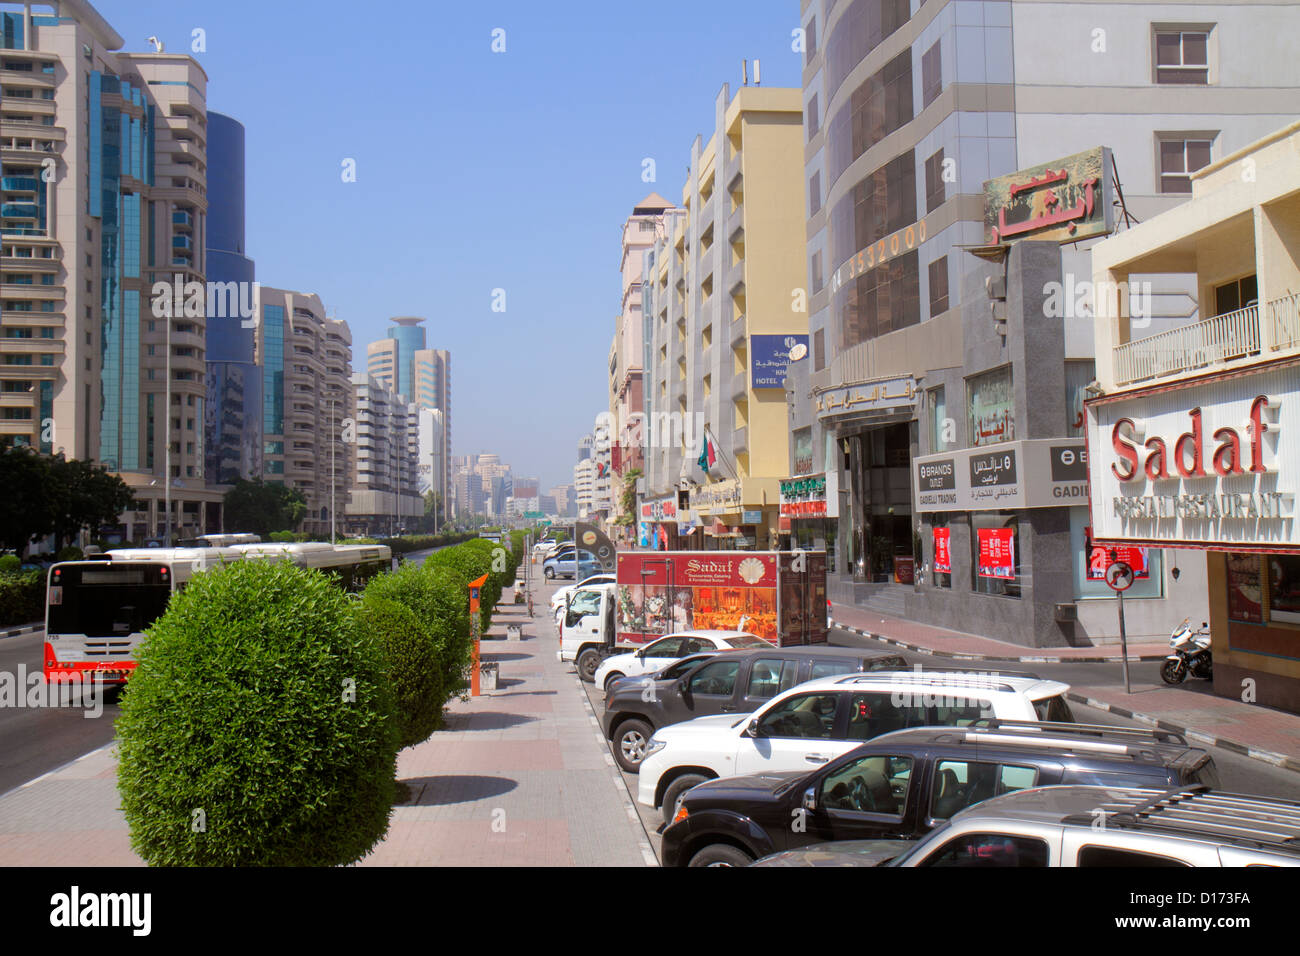 Dubai UAE,Emirati Arabi Uniti,Deira,al Rigga,al Maktoum Road,Street scene,business,quartiere,edifici,skyline della città,inglese,arabo,lingua,bilingua Foto Stock